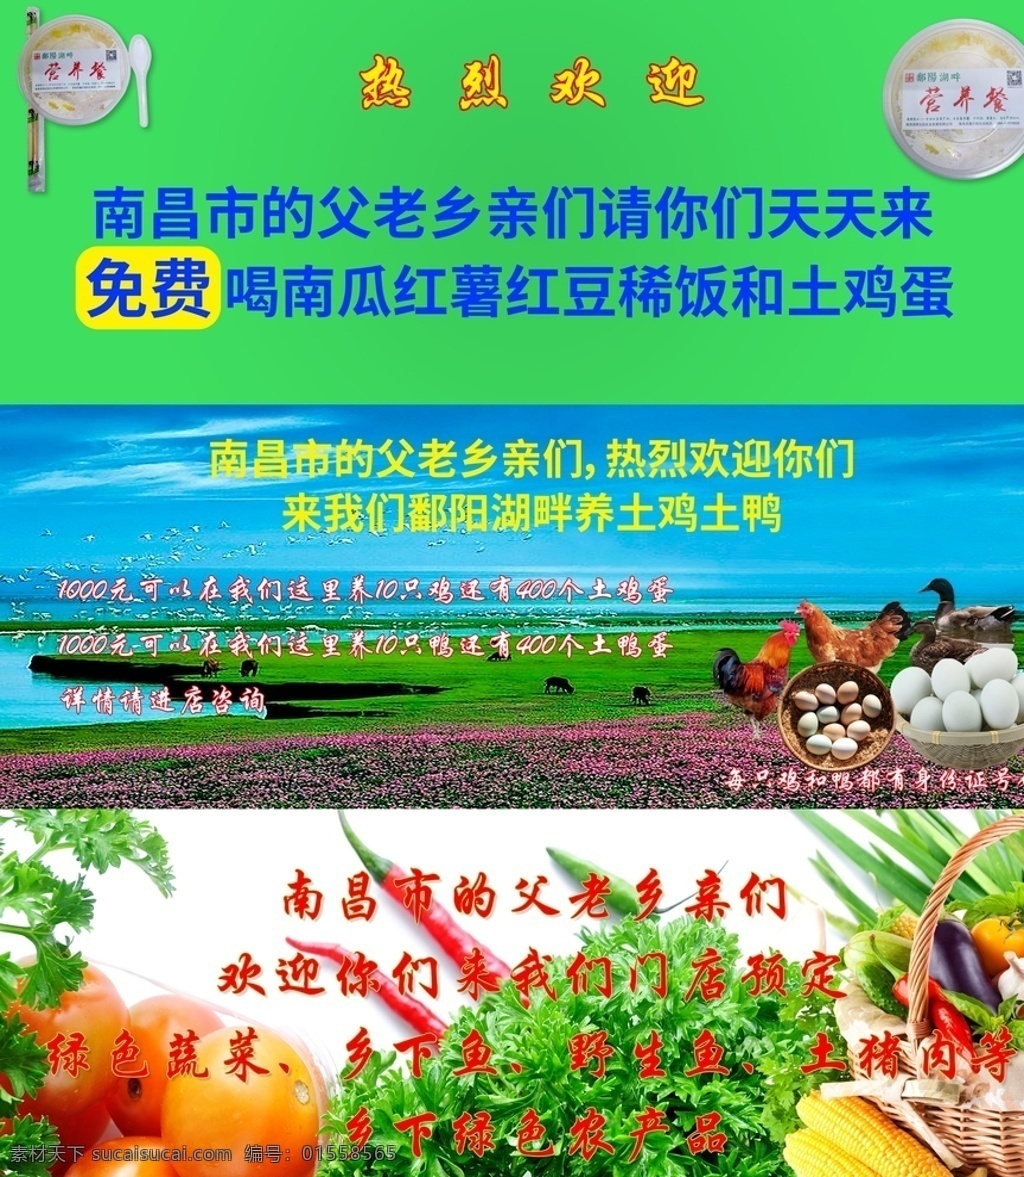 鄱阳湖畔 生态农业 绿 色生 态 农 业